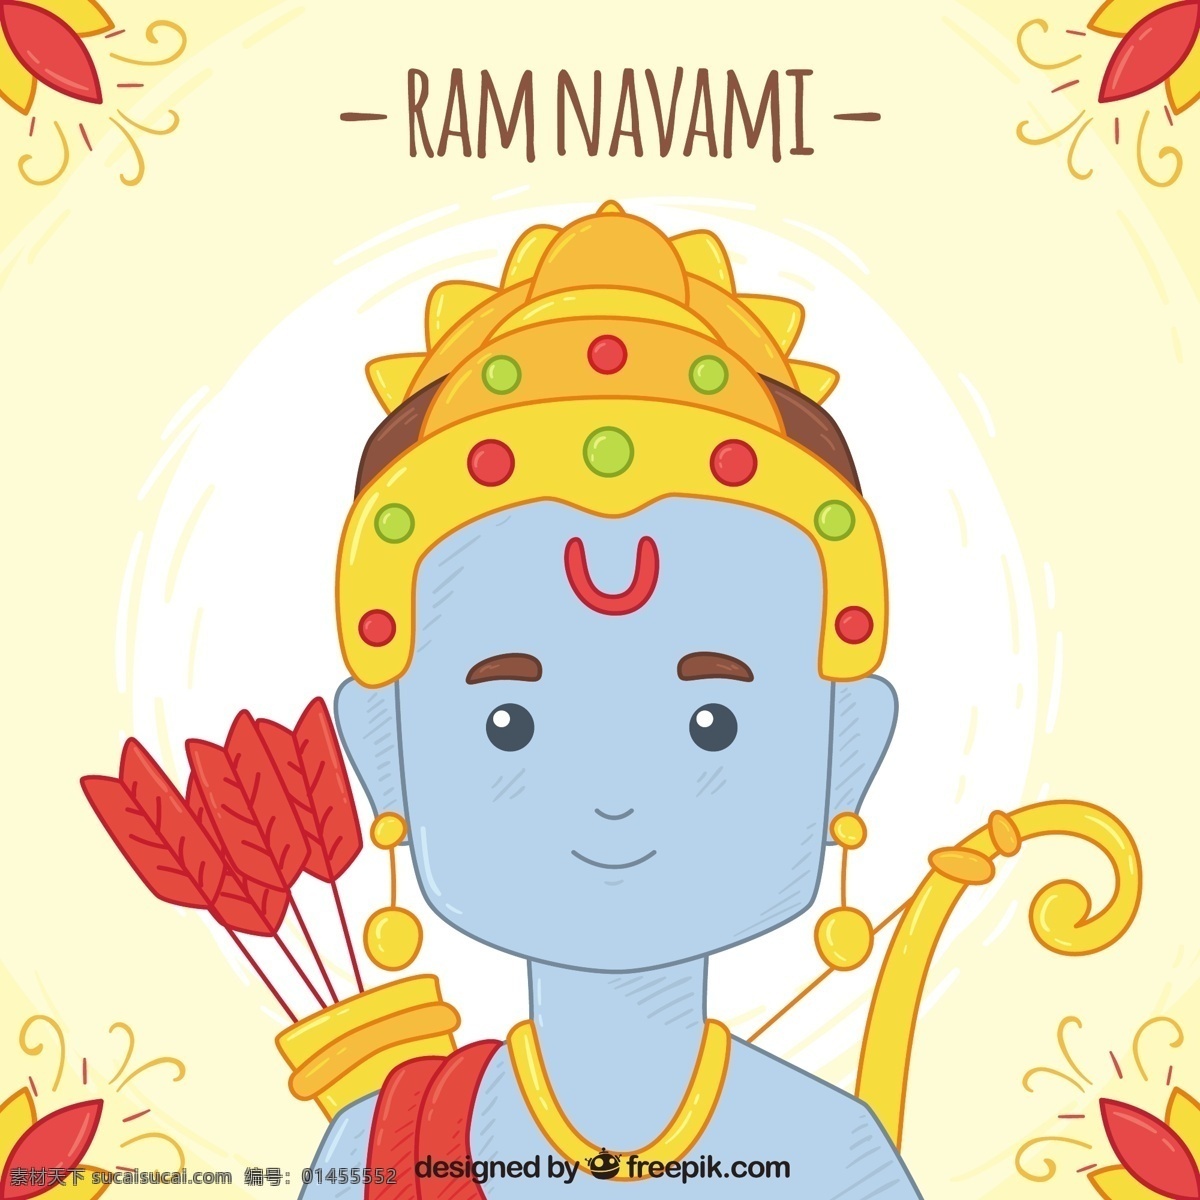 ram navami 手绘 风格 可爱 背景 箭头 党 手 春天 庆祝 节日 印度 宗教 和平 文化 党的背景 寺庙 上帝 春天的背景